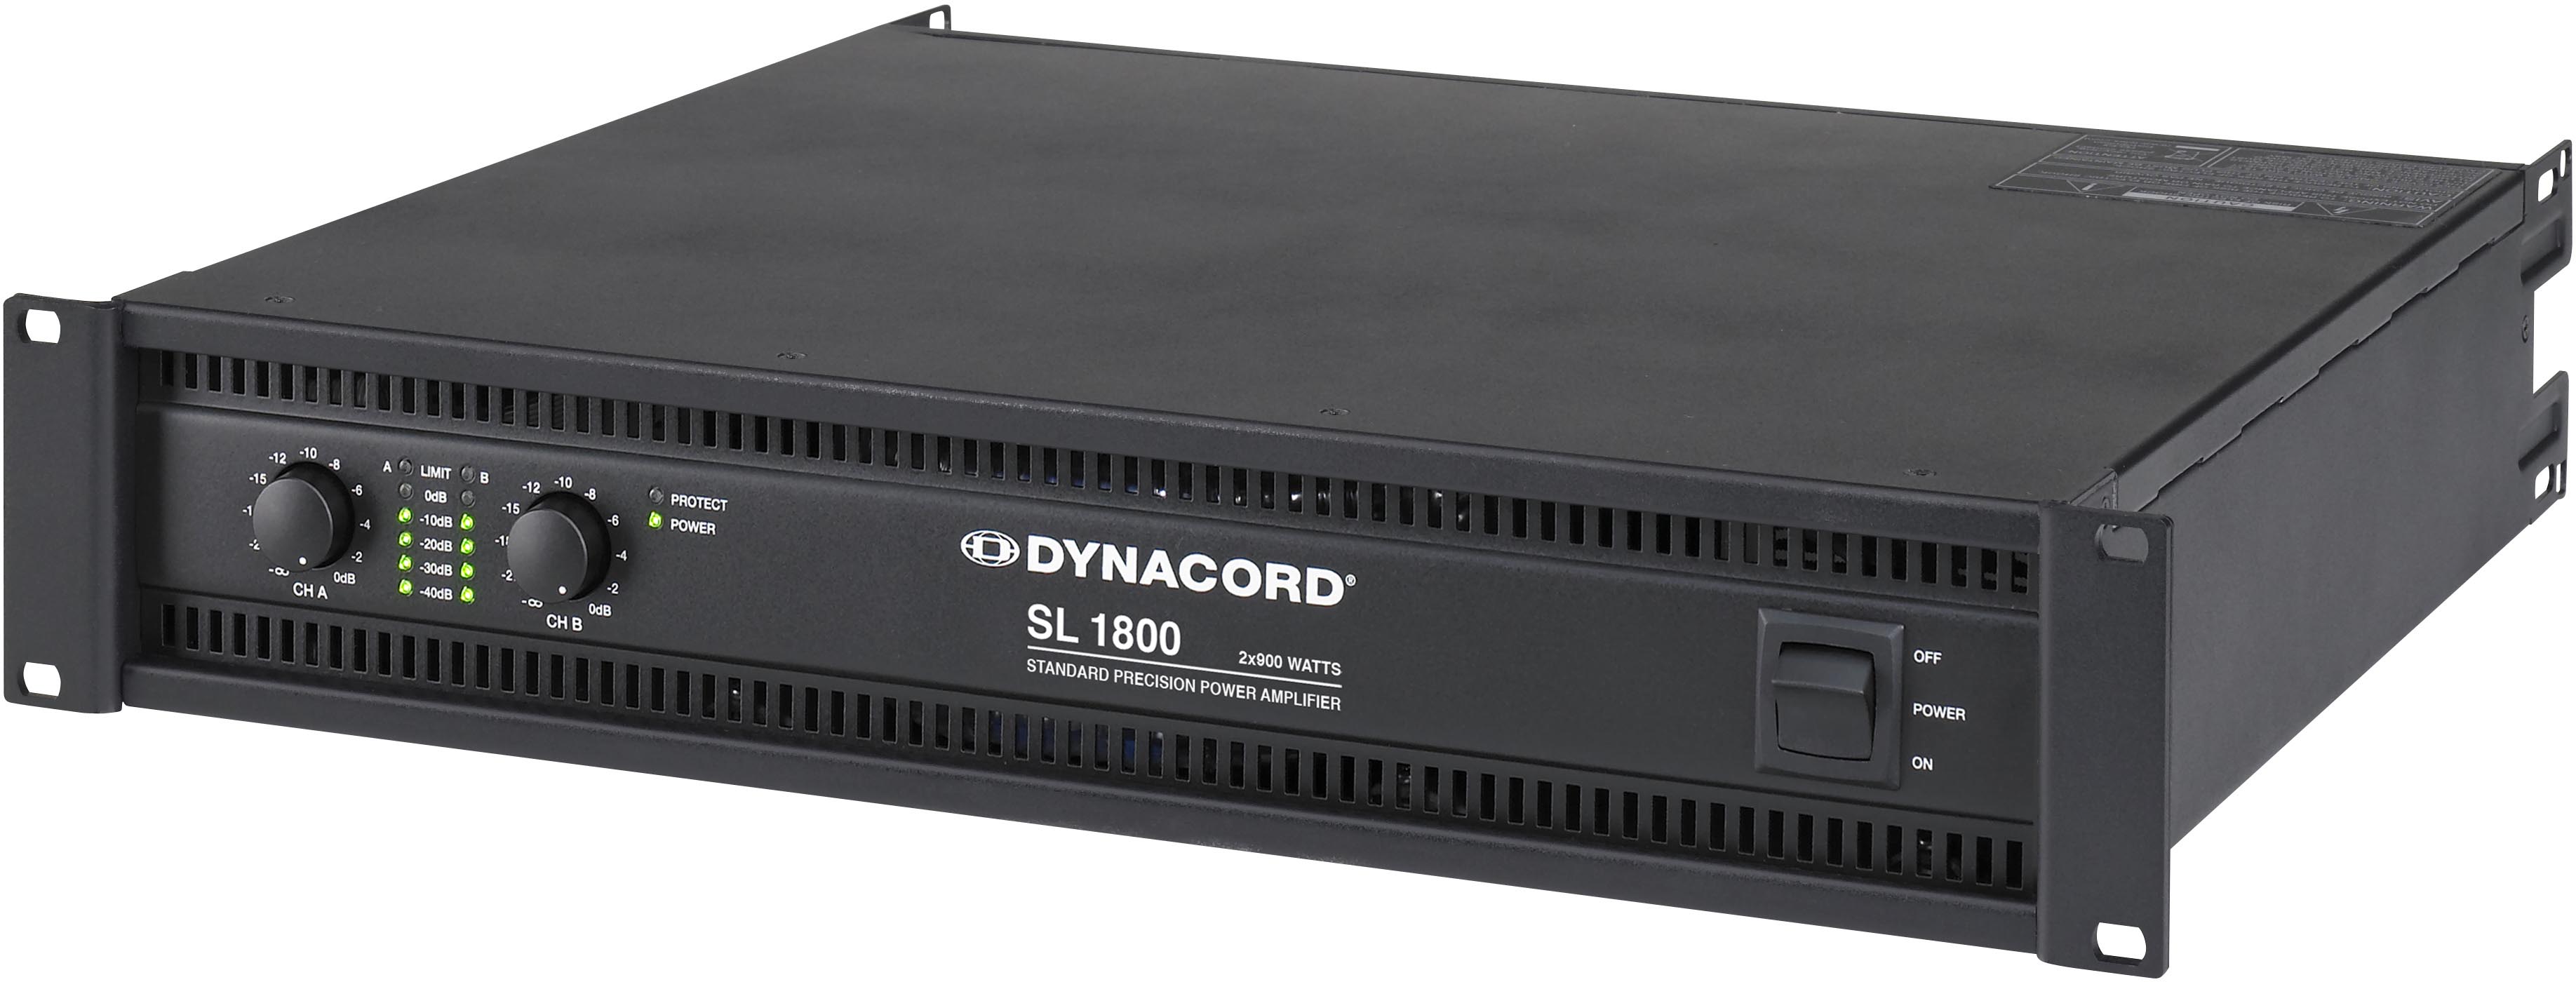 DYNACORD - SL 1800 آمپلی فایر